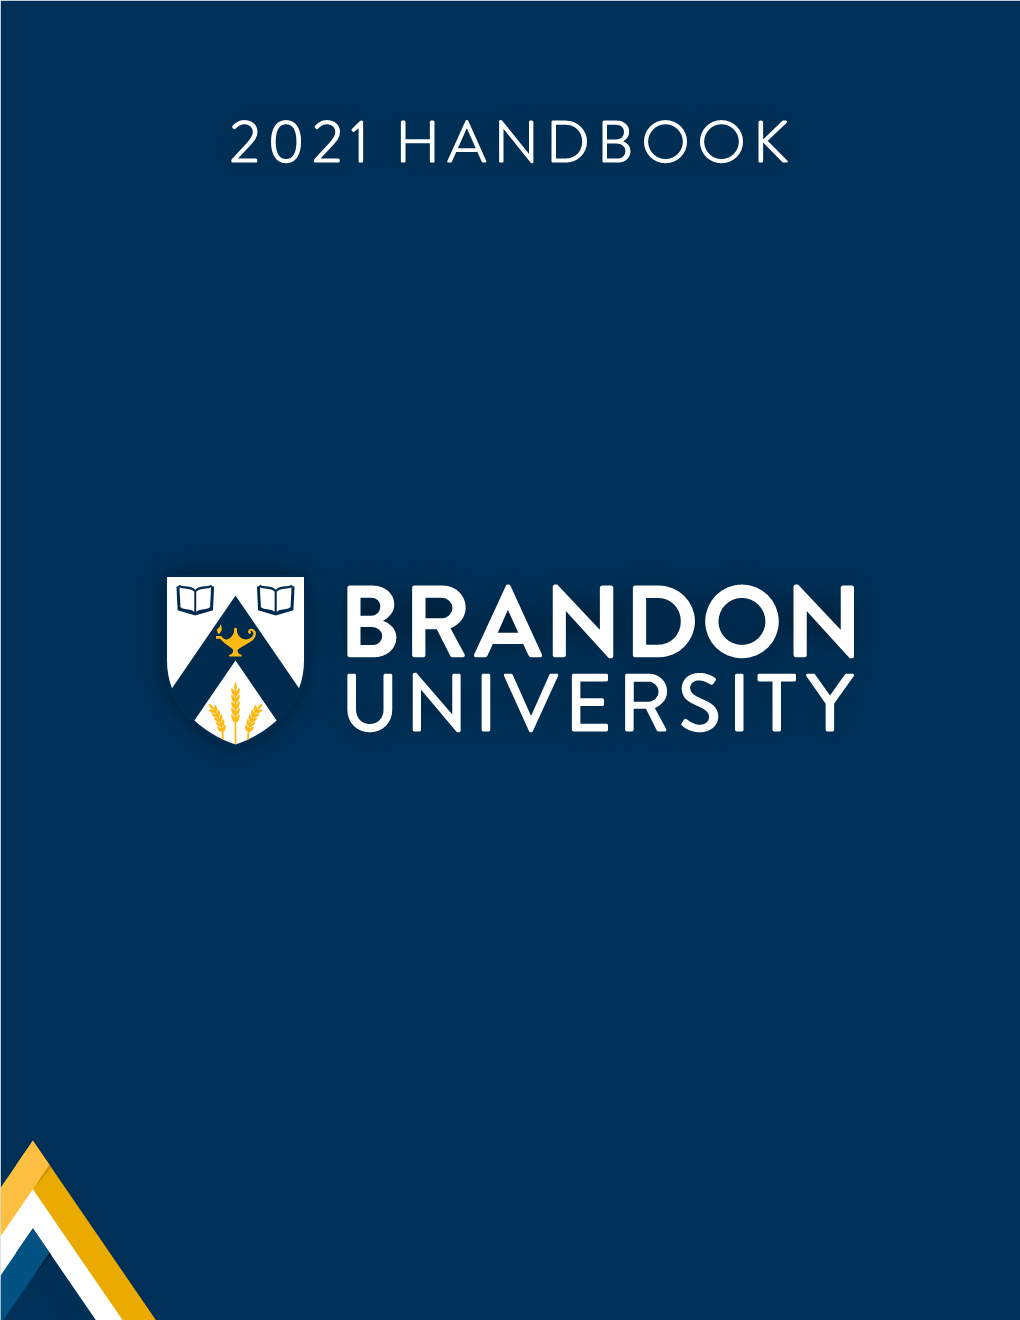 BU Handbook 2021